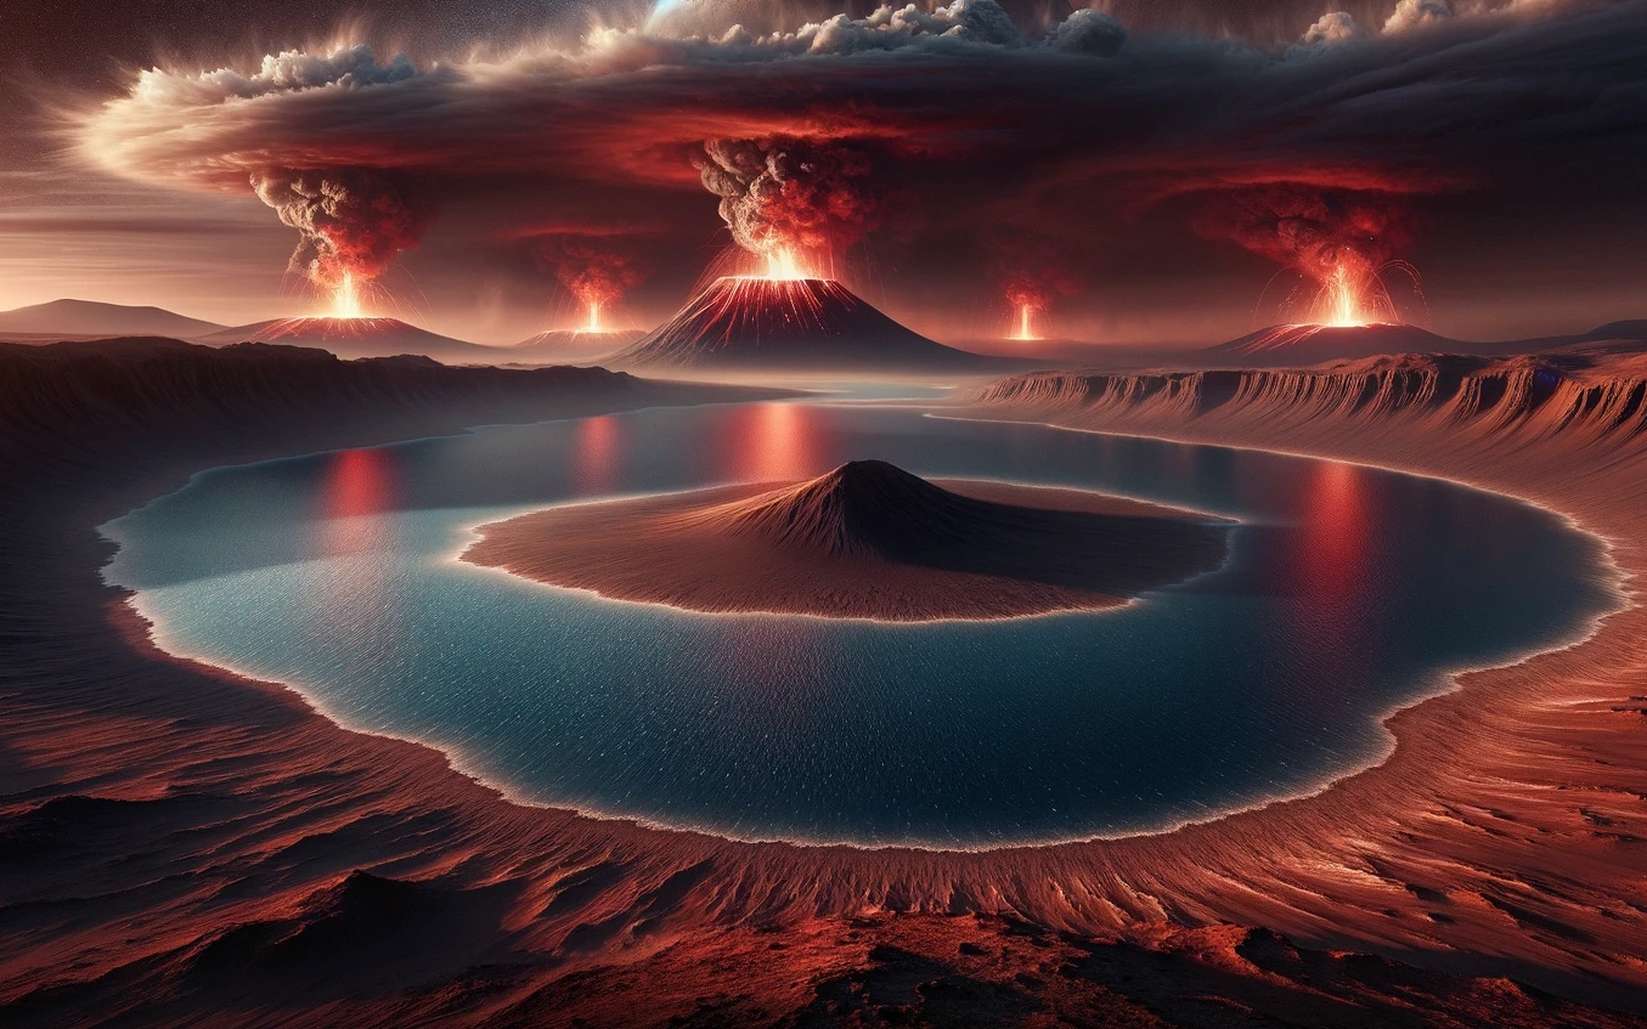 La vie sur Mars aurait pu se développer dans cet ancien lac près de volcans en activité